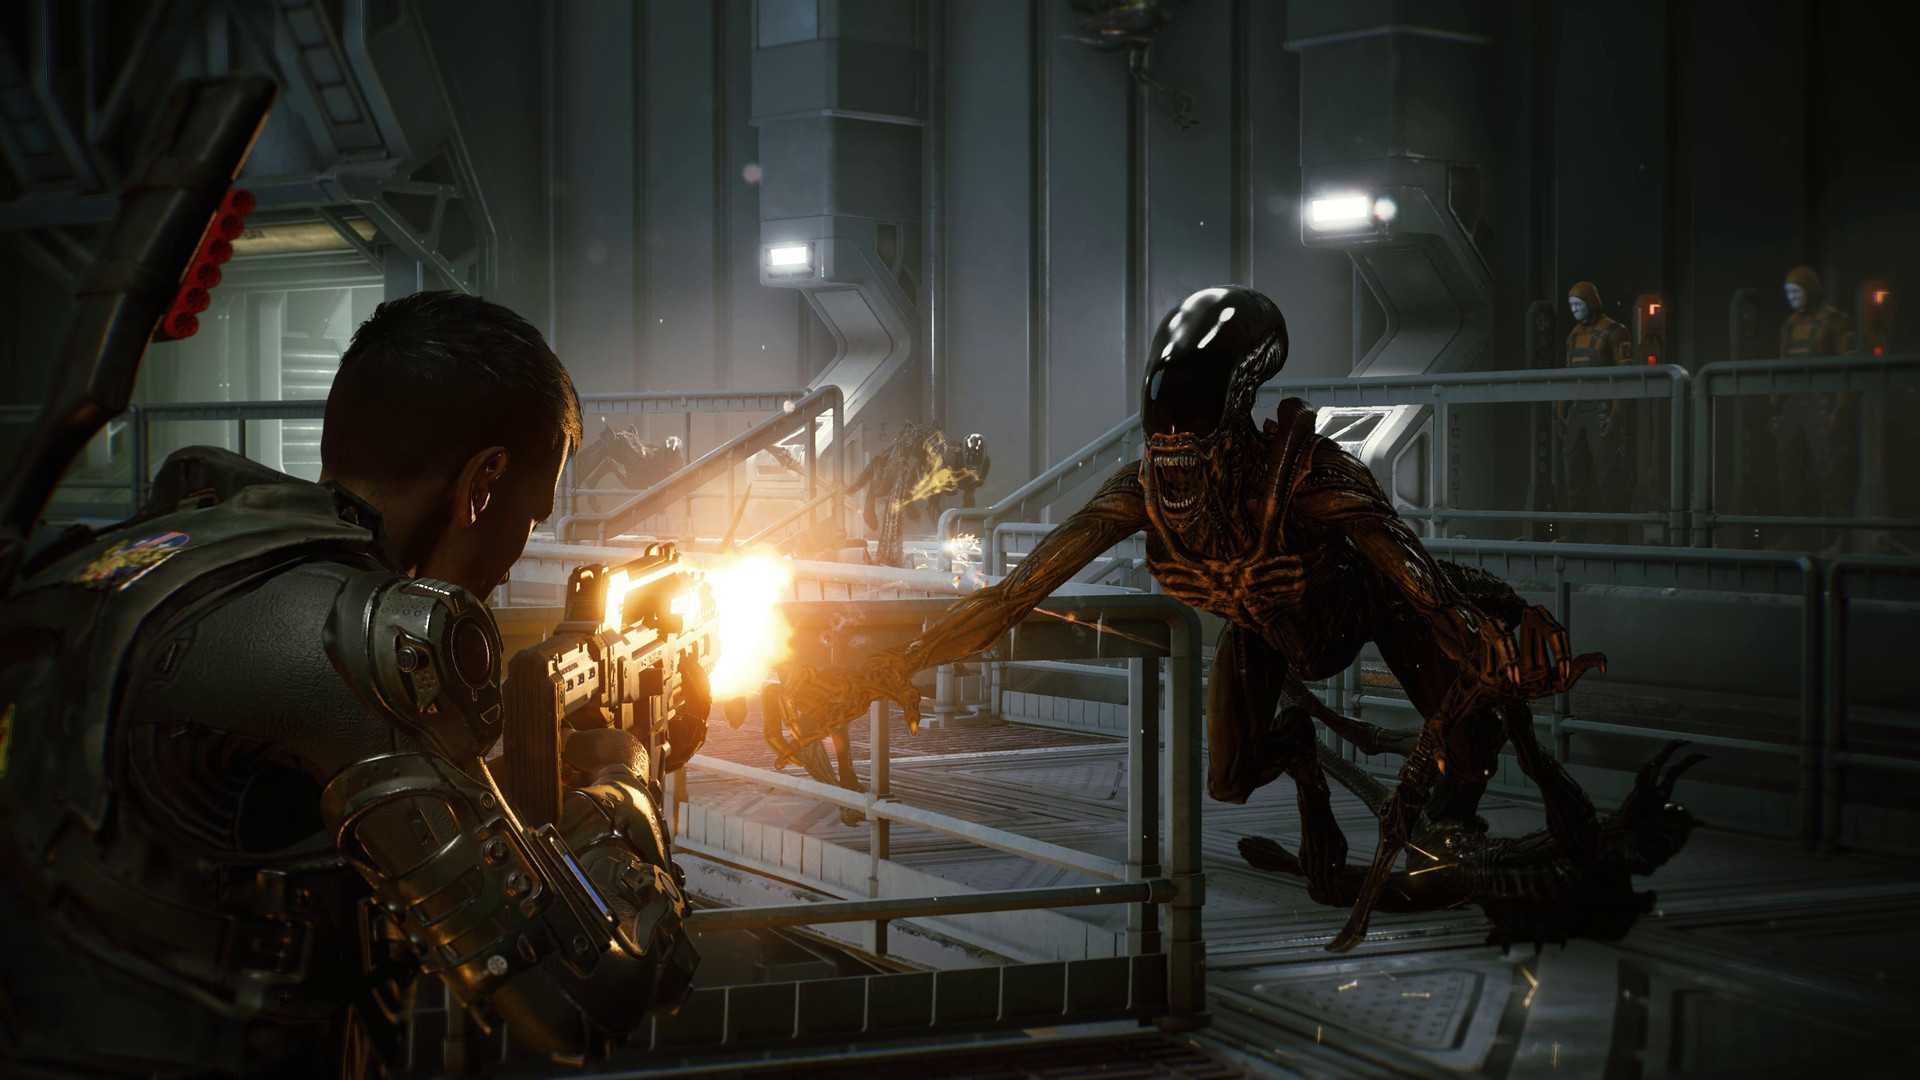 Aliens: Fireteam apporte l'expérience de survie en coopération sur PlayStation, Xbox et PC cet été